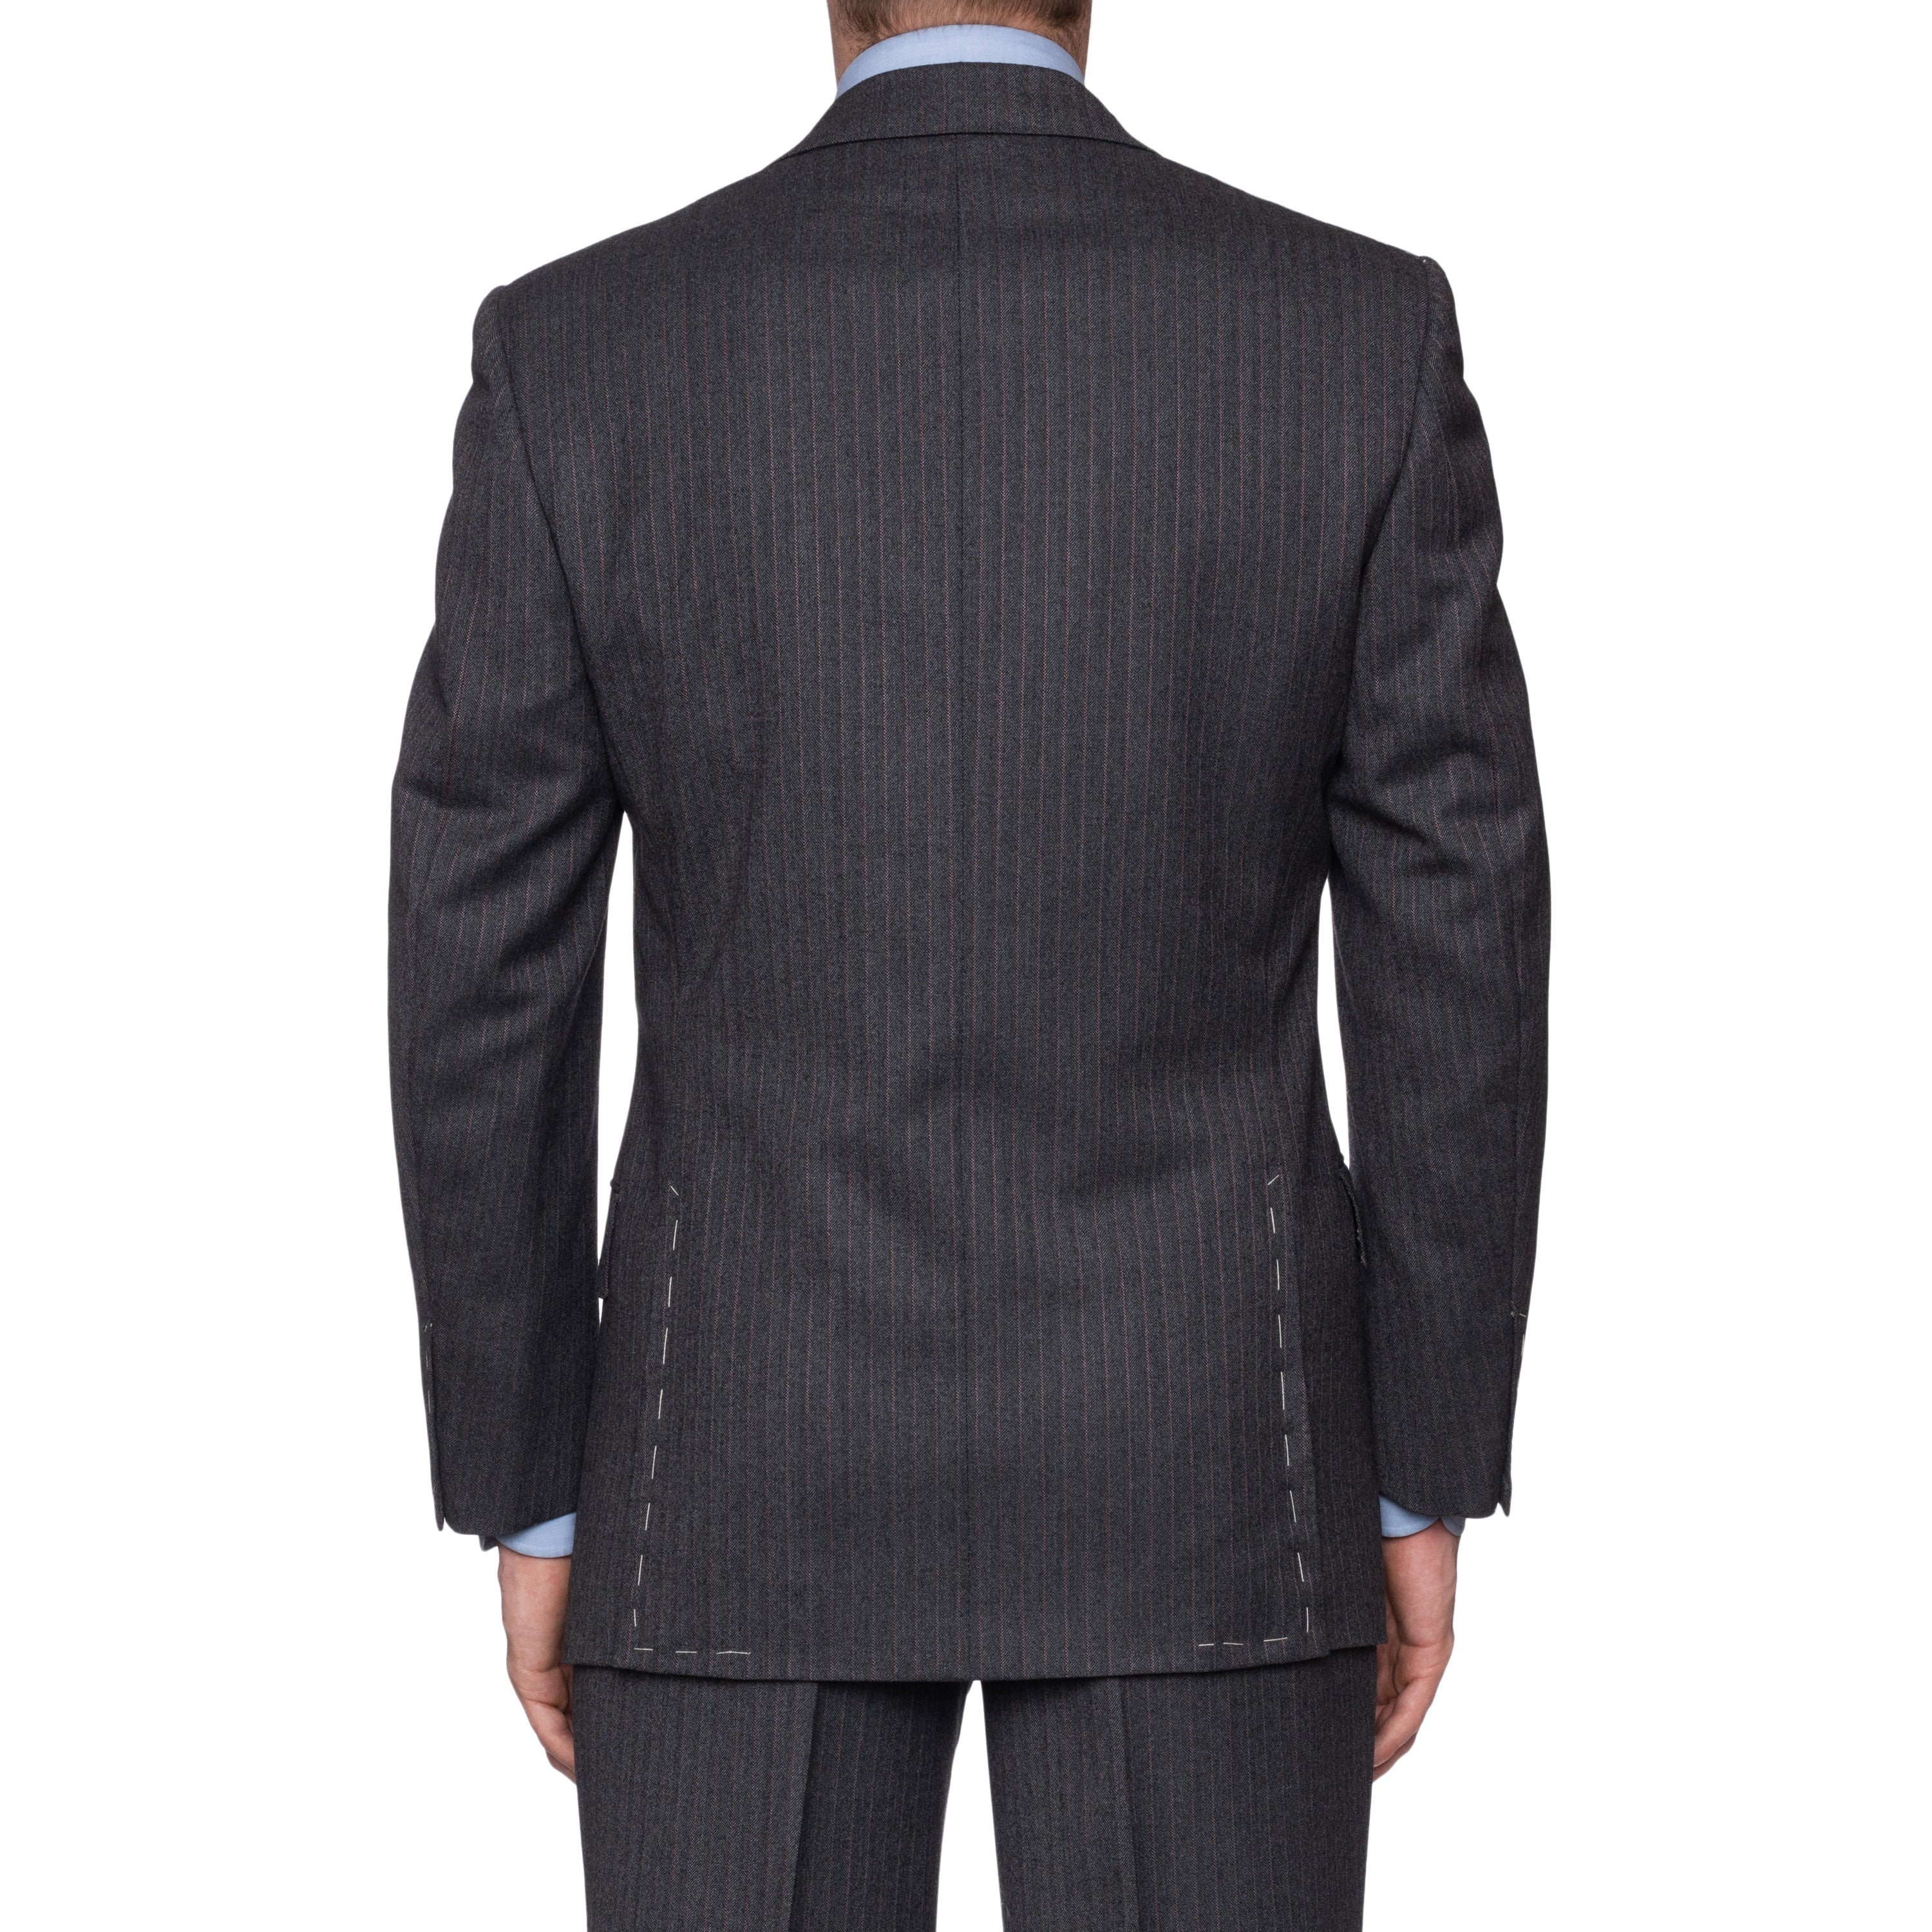 SARTORIA CASTANGIA Gray Herringbone Merino Wool Super 120's Suit 48 NEW 38 CASTANGIA